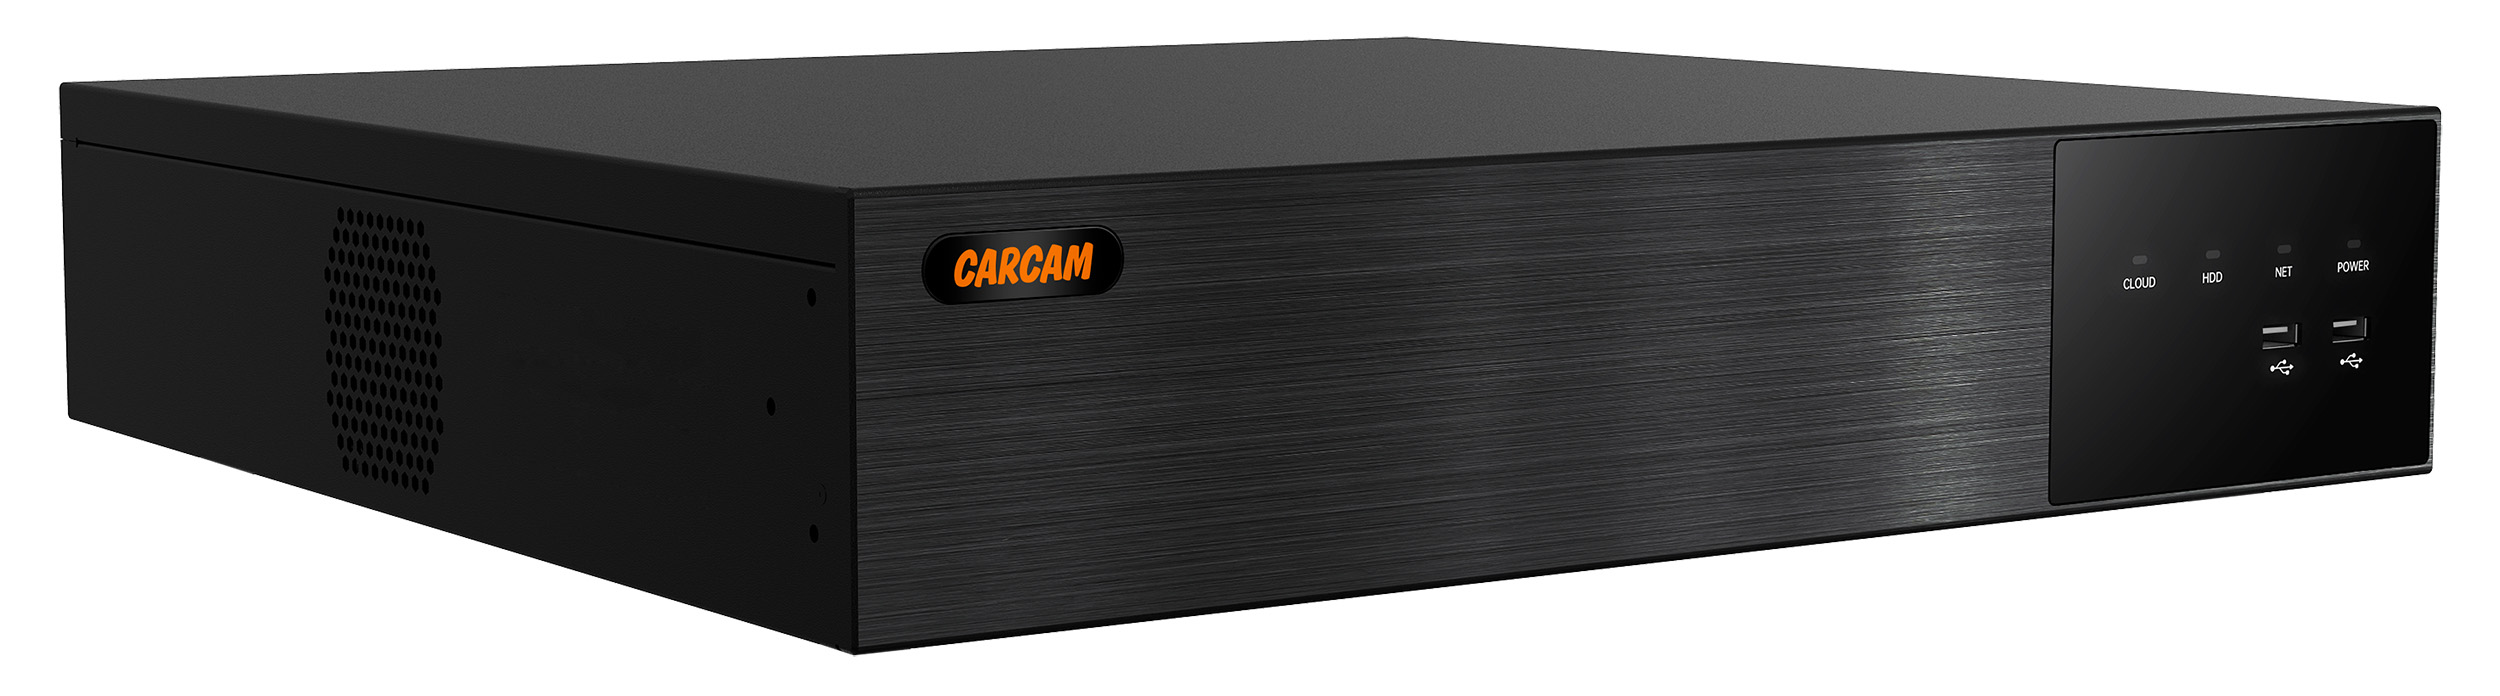 64-канальный IP-видеорегистратор CARCAM 64CH NVR 8764 32 канальный ip видеорегистратор carcam 32ch nvr 8732